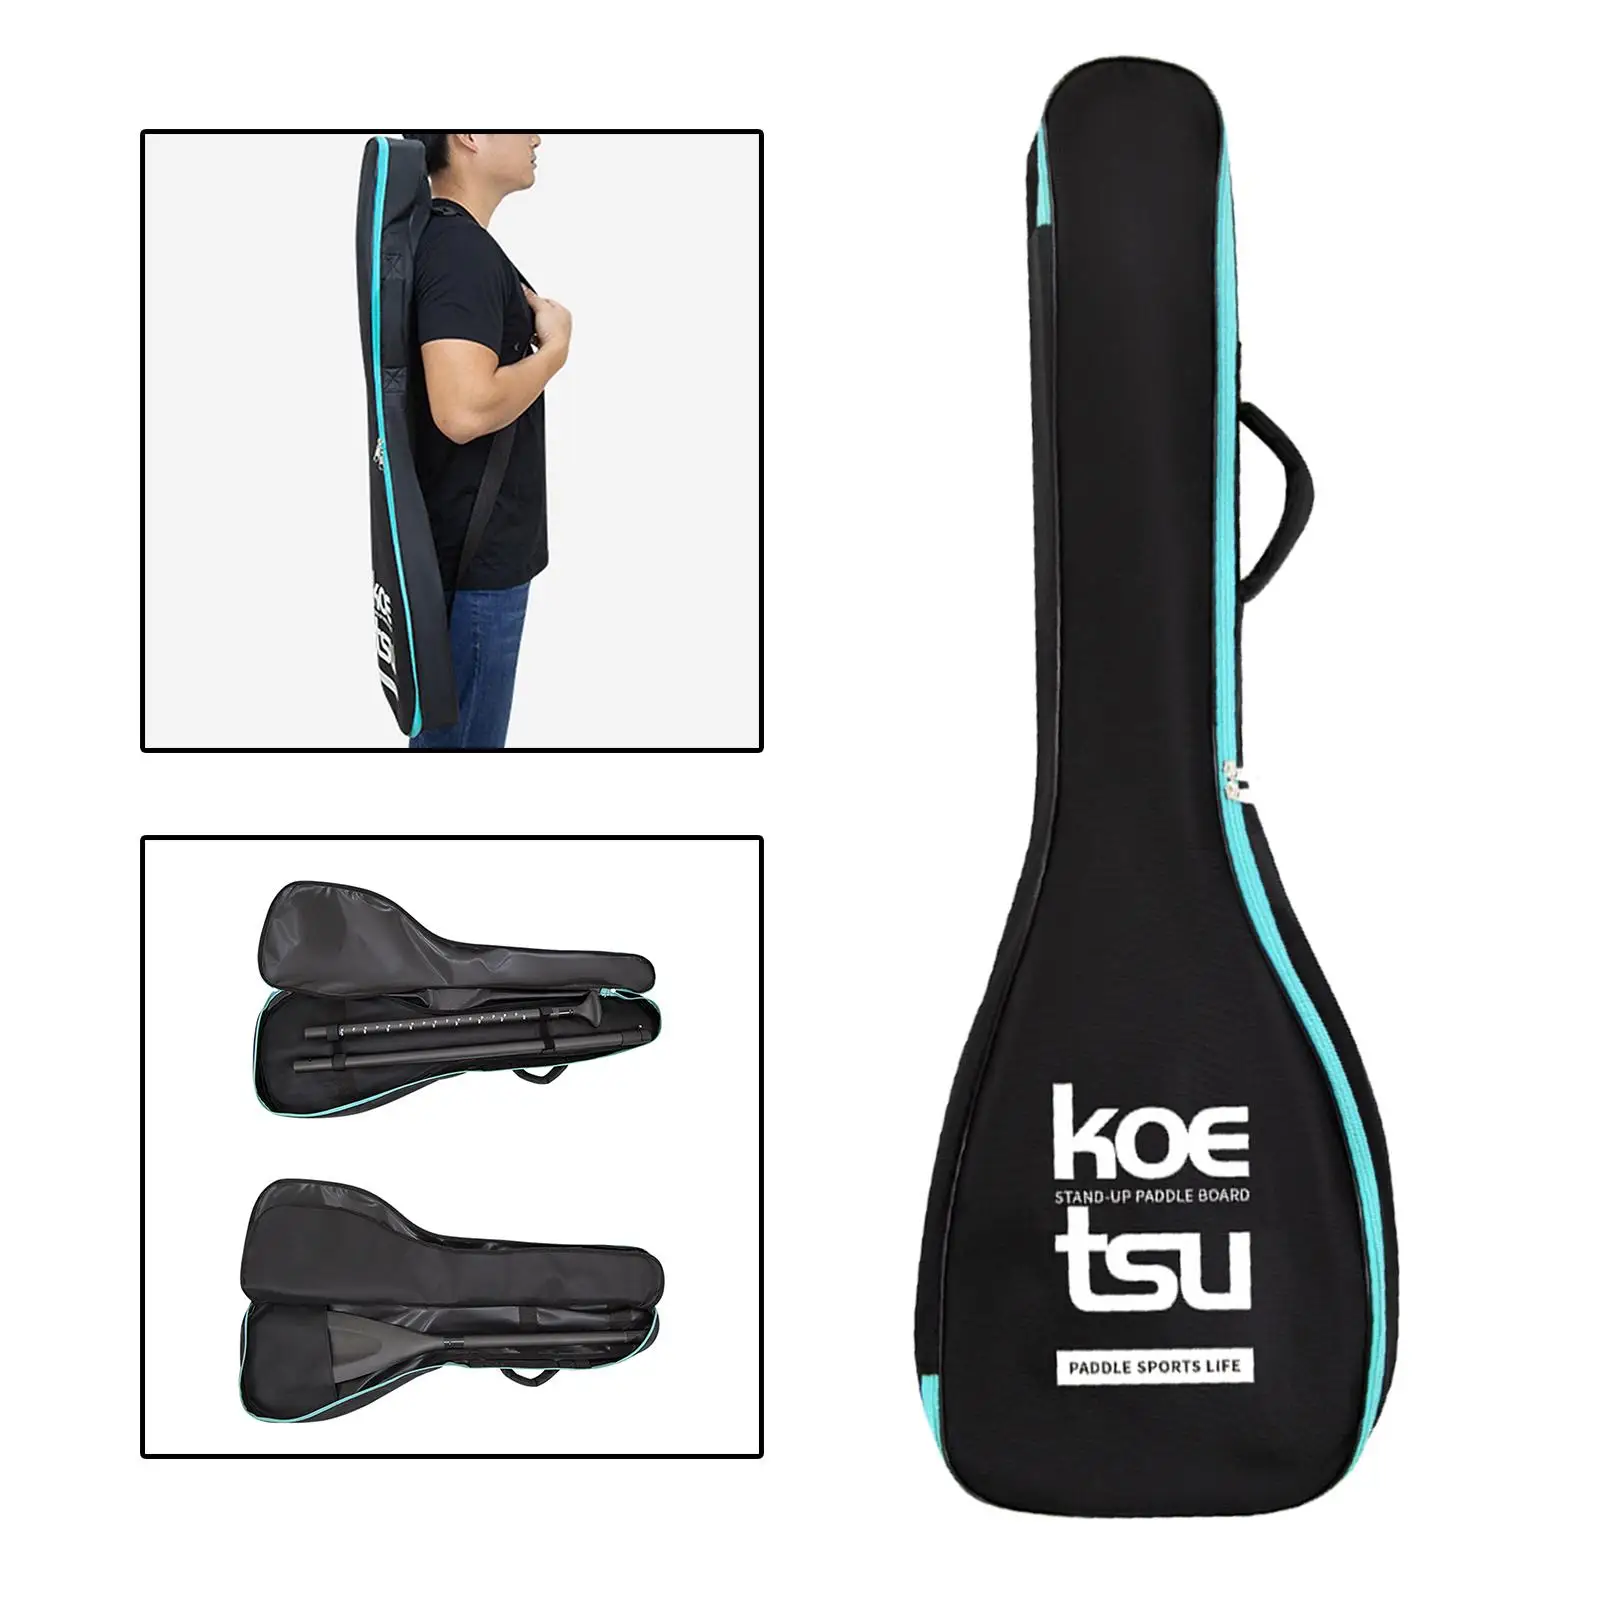 Kayak Paddle Bag Kayaking Paddle Transportation Bag Lightweight Portable Paddle